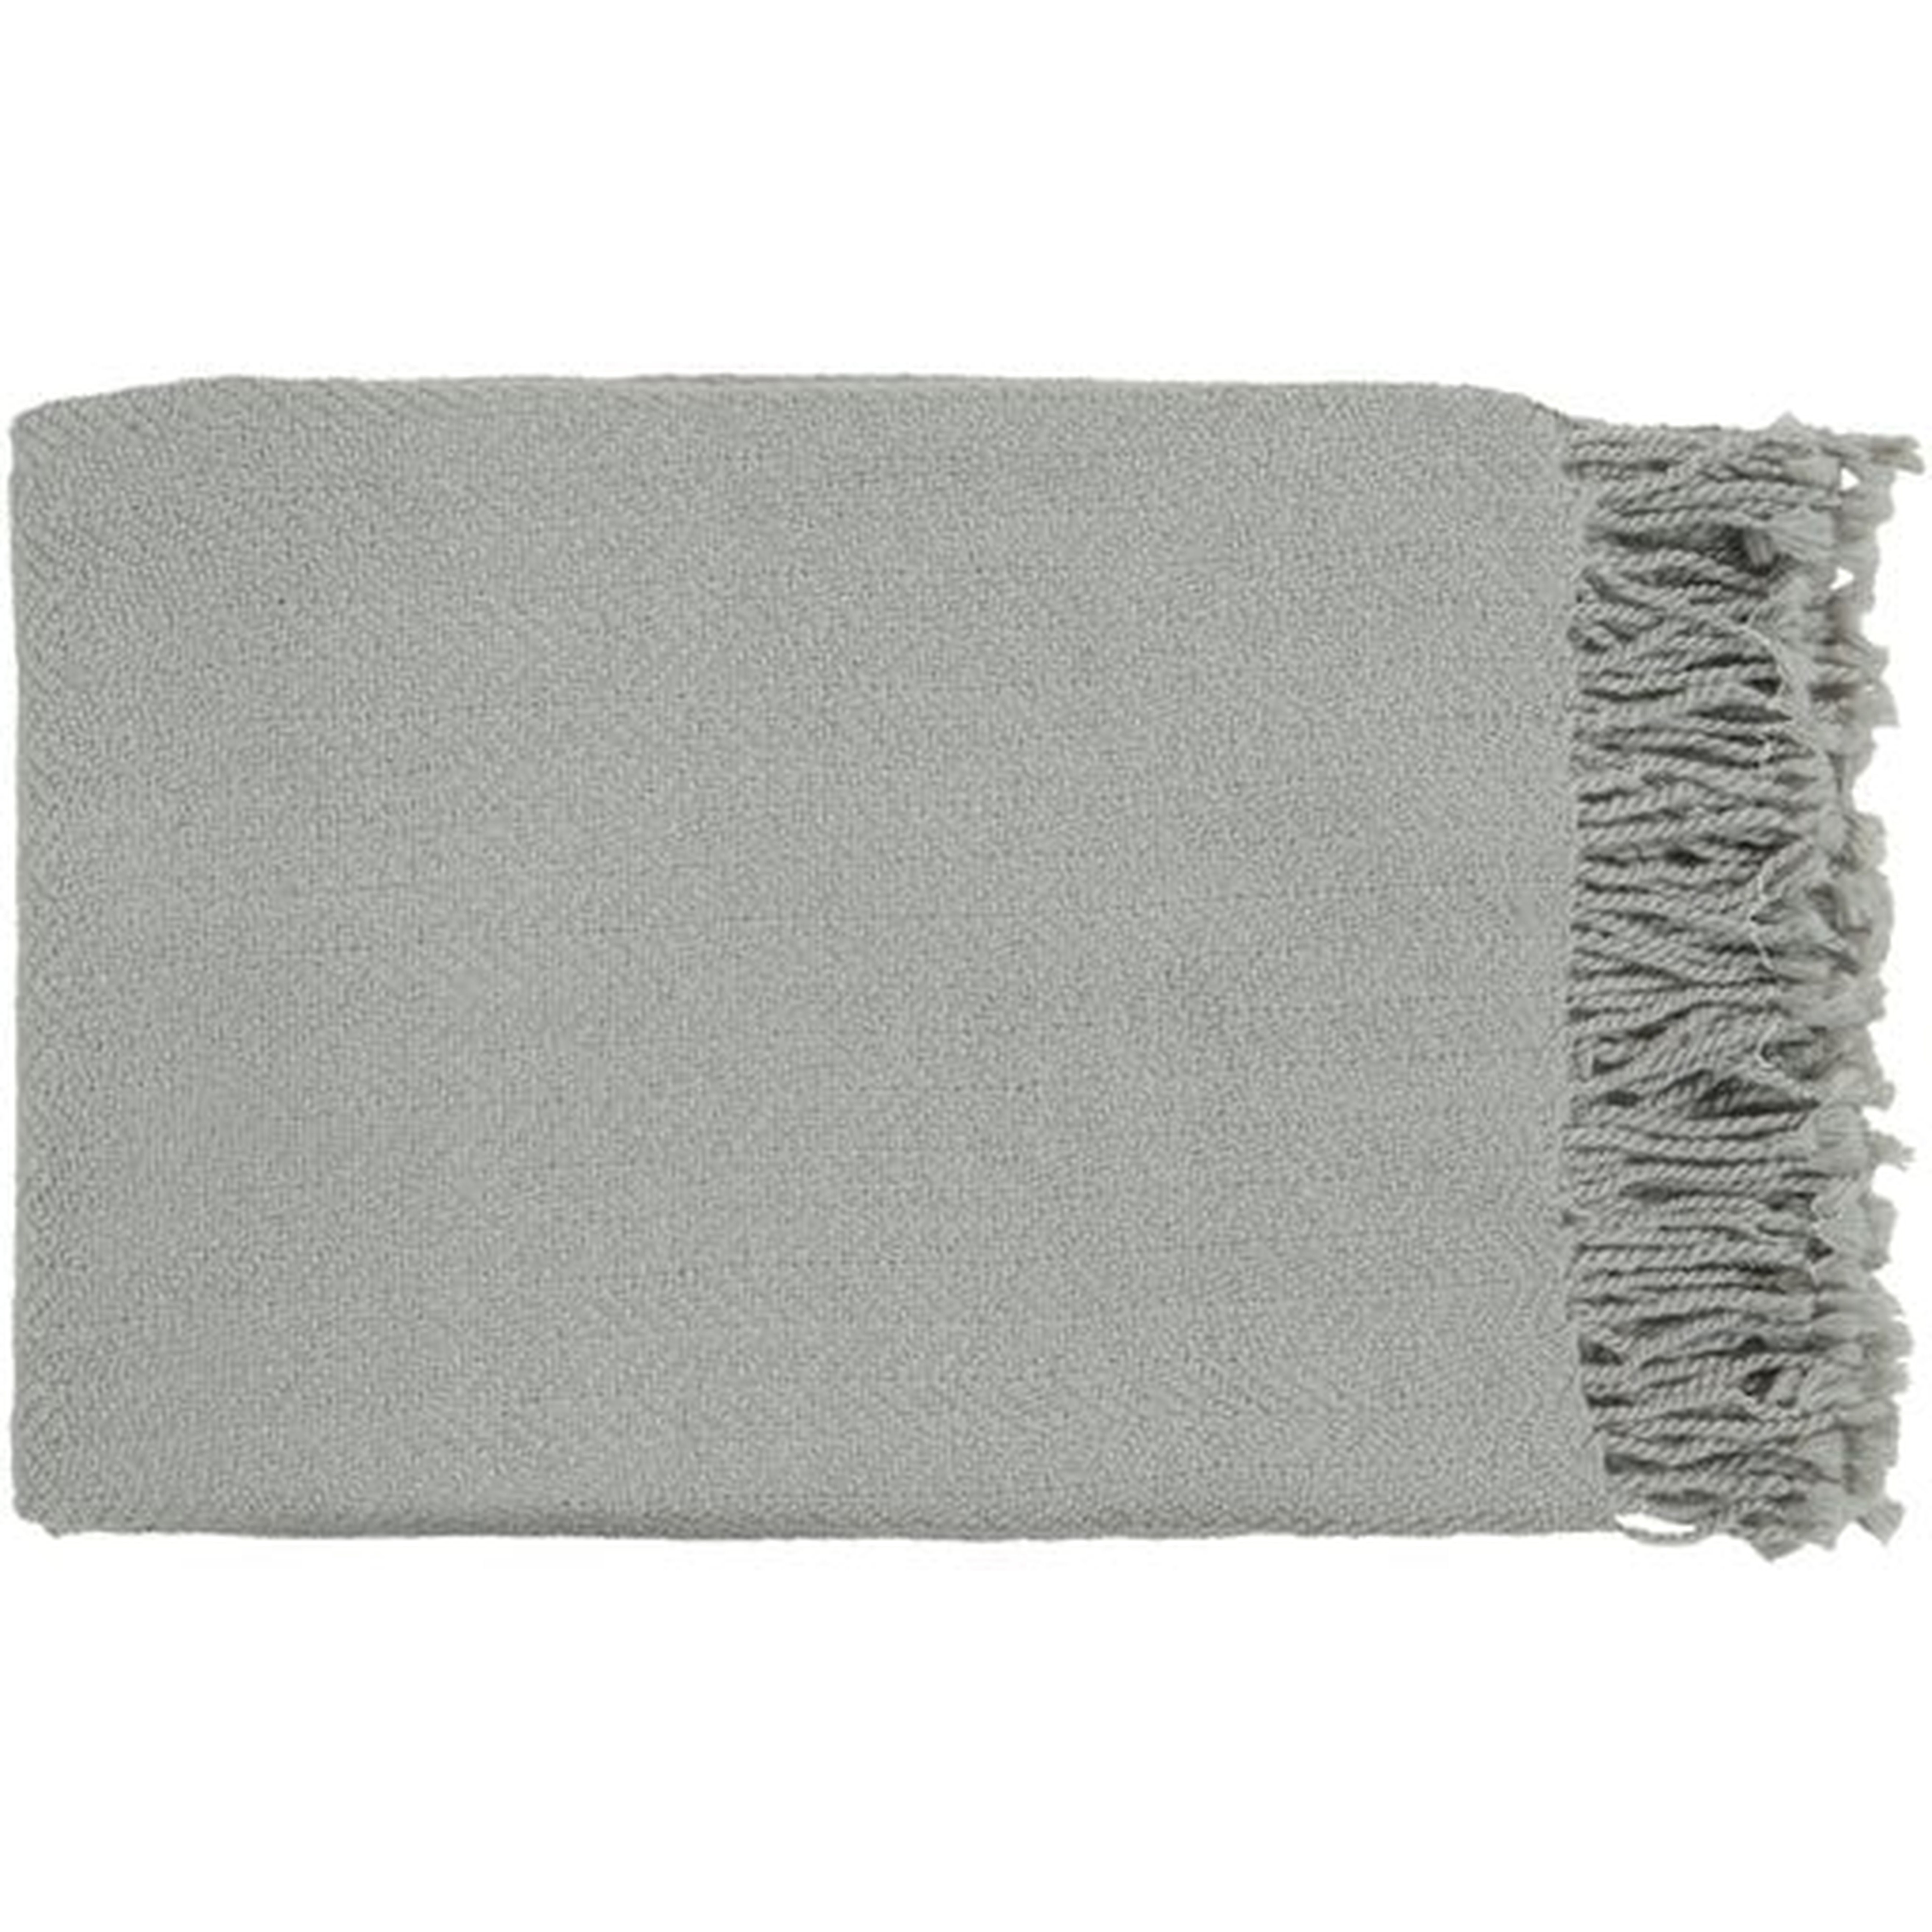 Neva Home Turner Medium Gray Throw Blanket - Surya